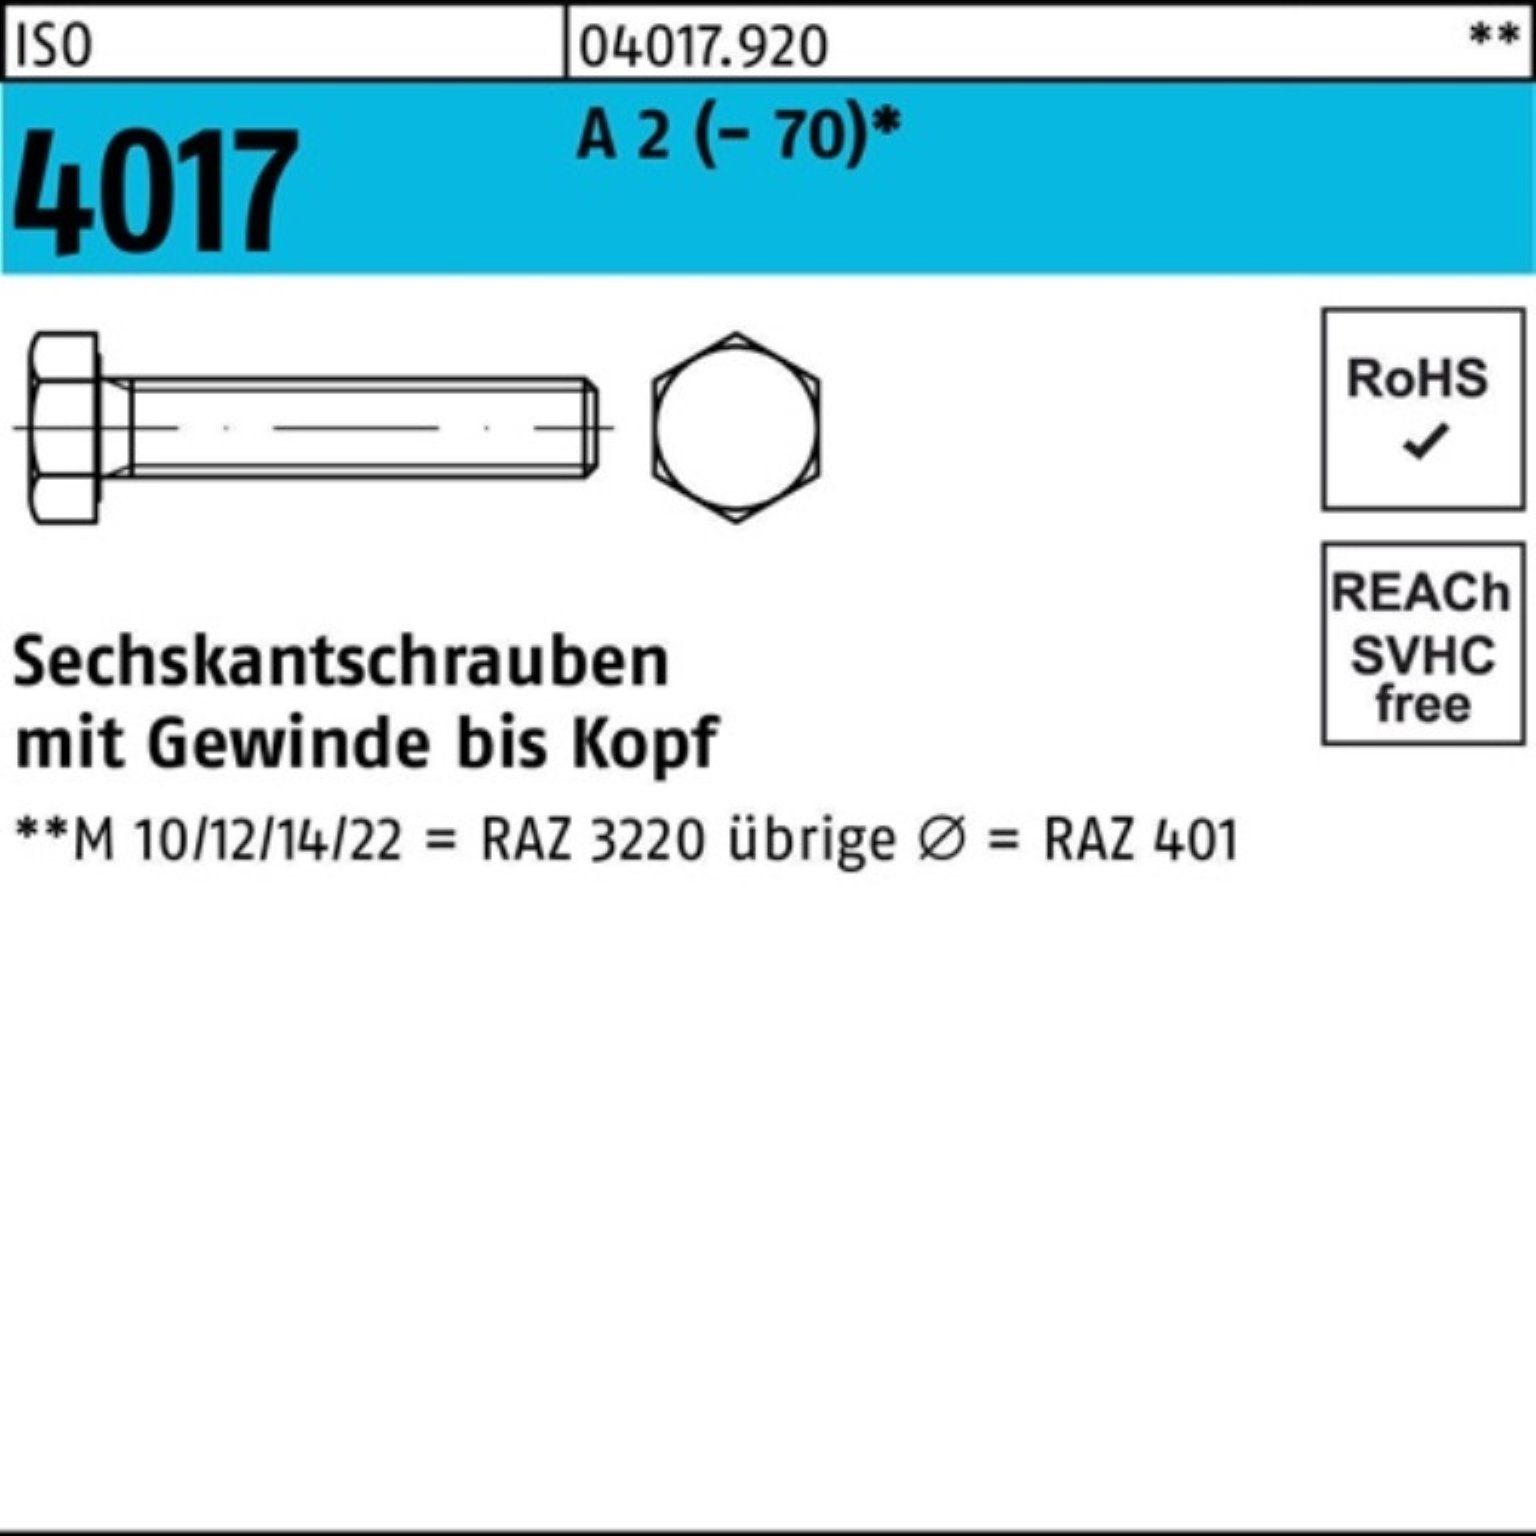 Bufab Sechskantschraube 500er Pack Sechskantschraube ISO 4017 VG M5x 20 A 2 (70) 500 Stück